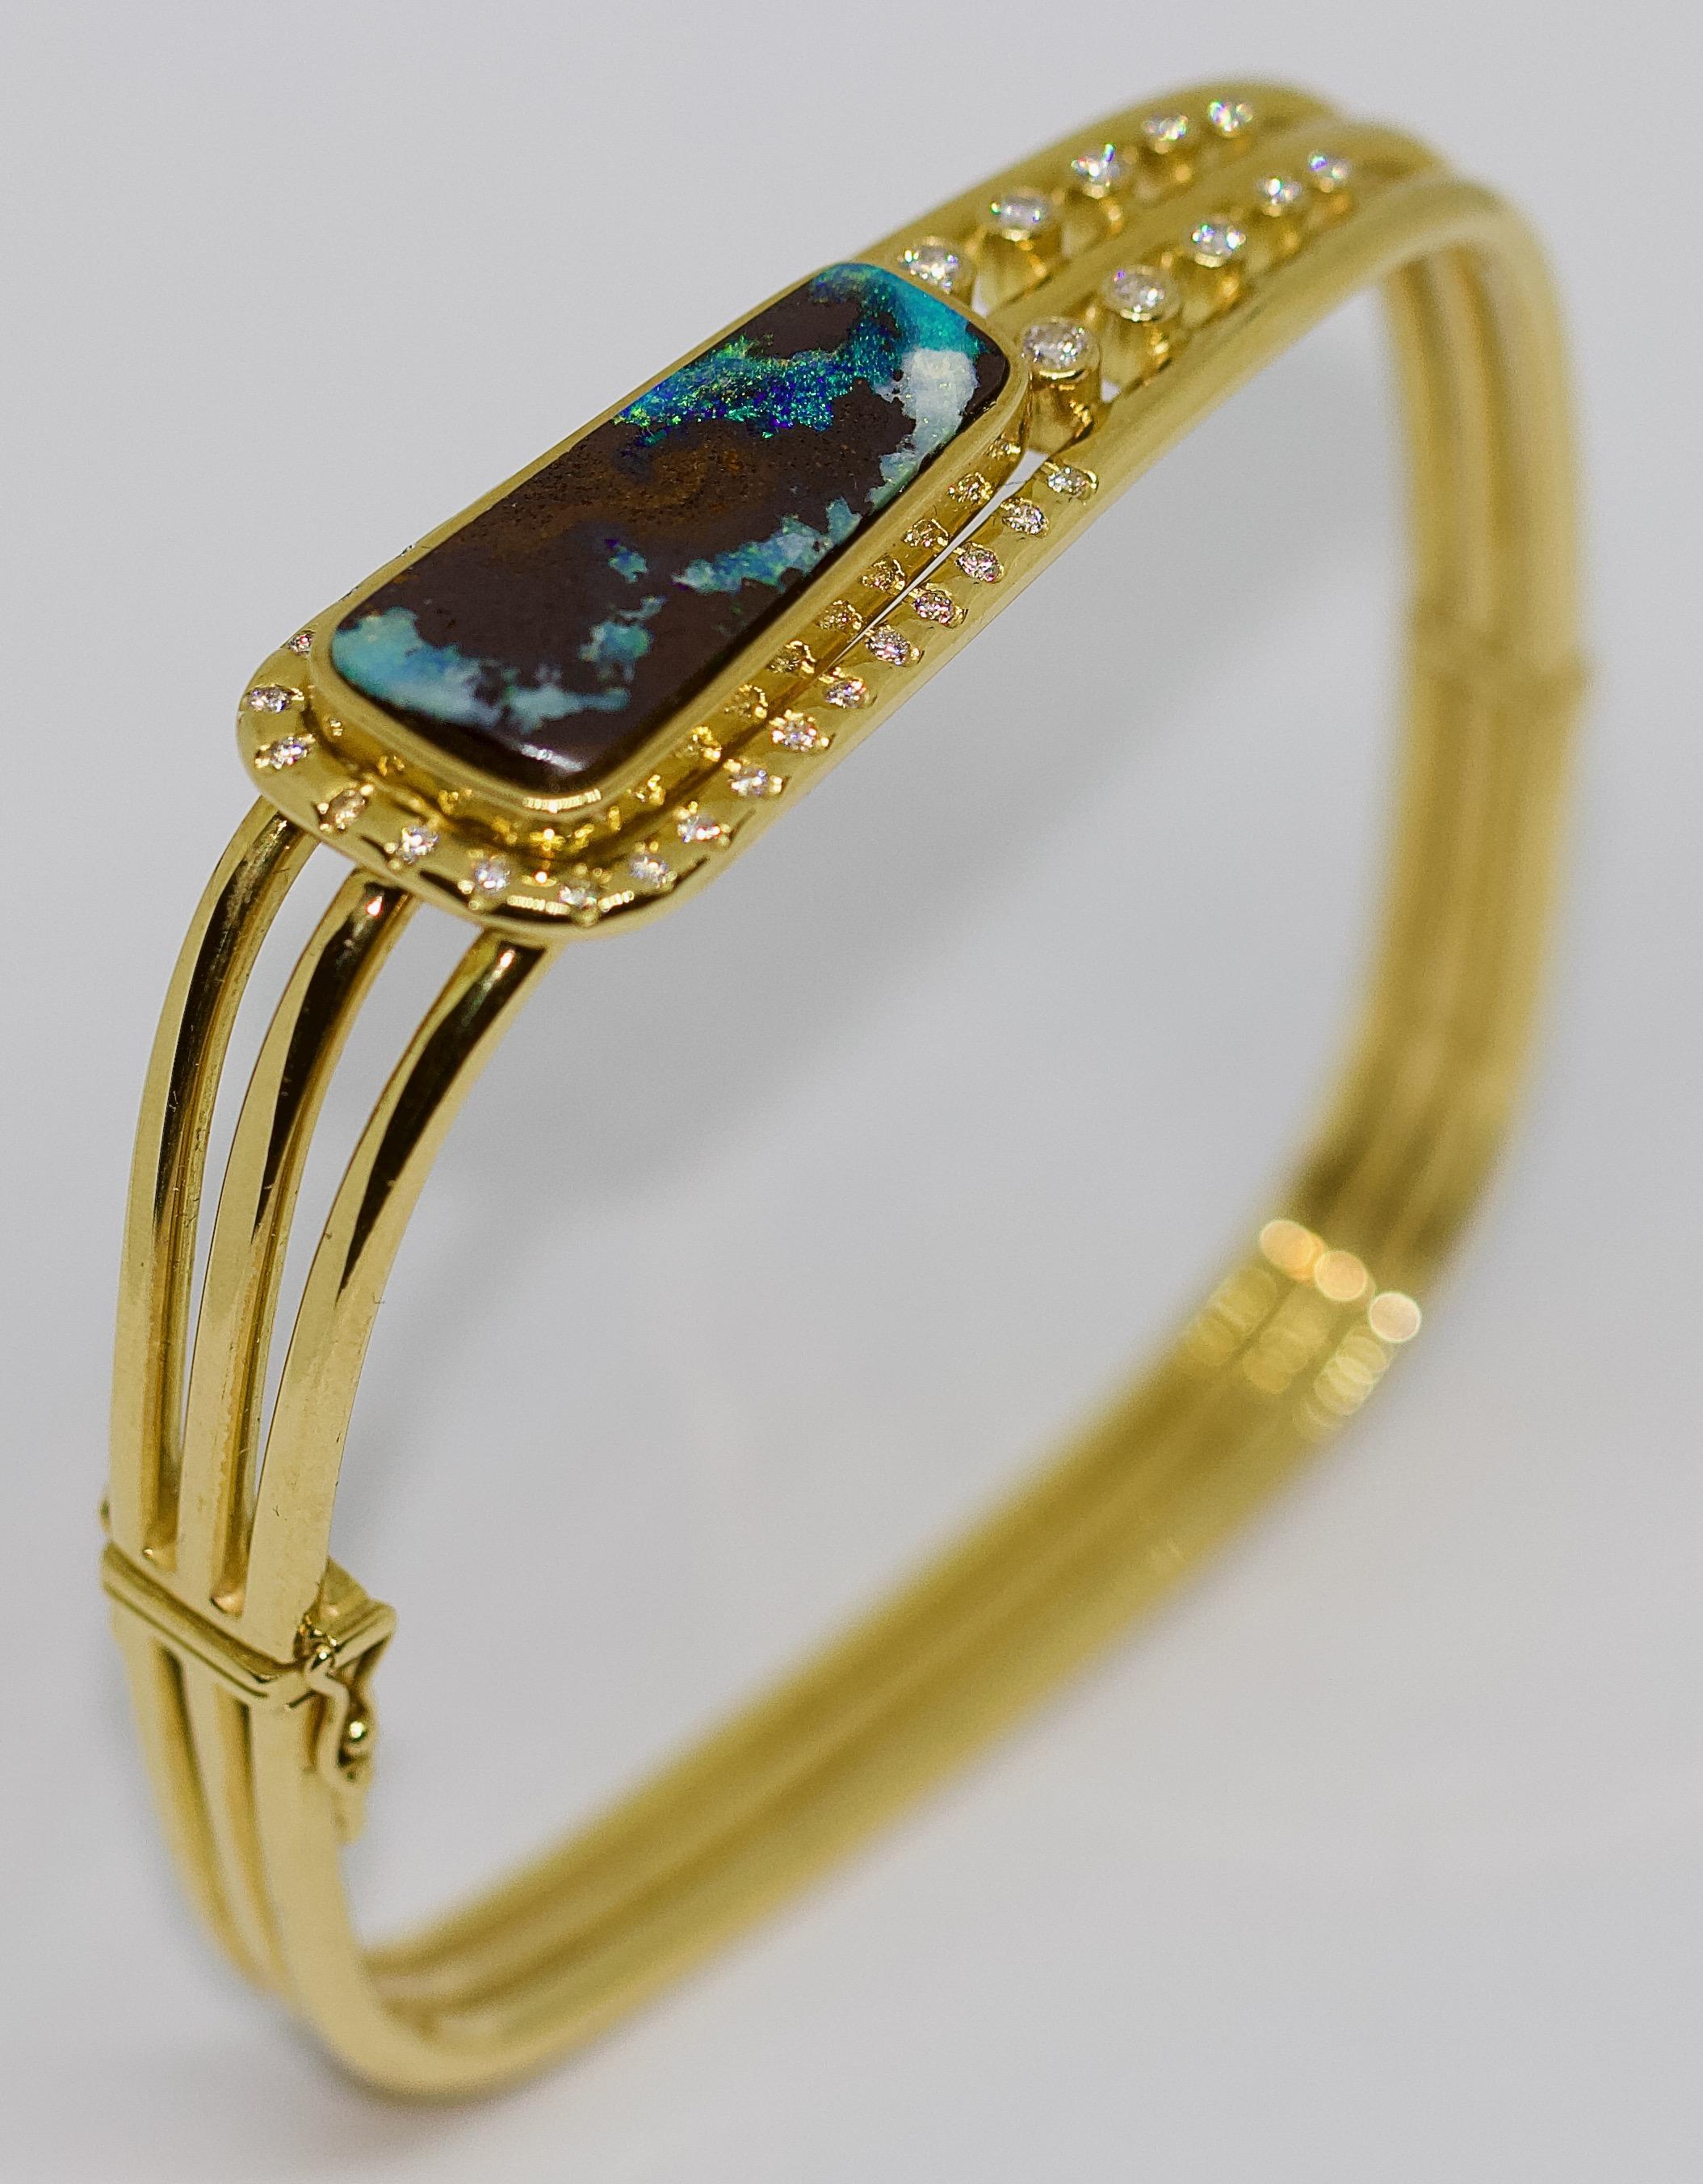 Bracelet pour femme en or 18 carats, avec une grande opale et des diamants.

Opale naturelle et solide.
Diamants : très bonne qualité, blancs, carat total 0,65.

Le bracelet est poinçonné.

Certificat d'authenticité inclus.